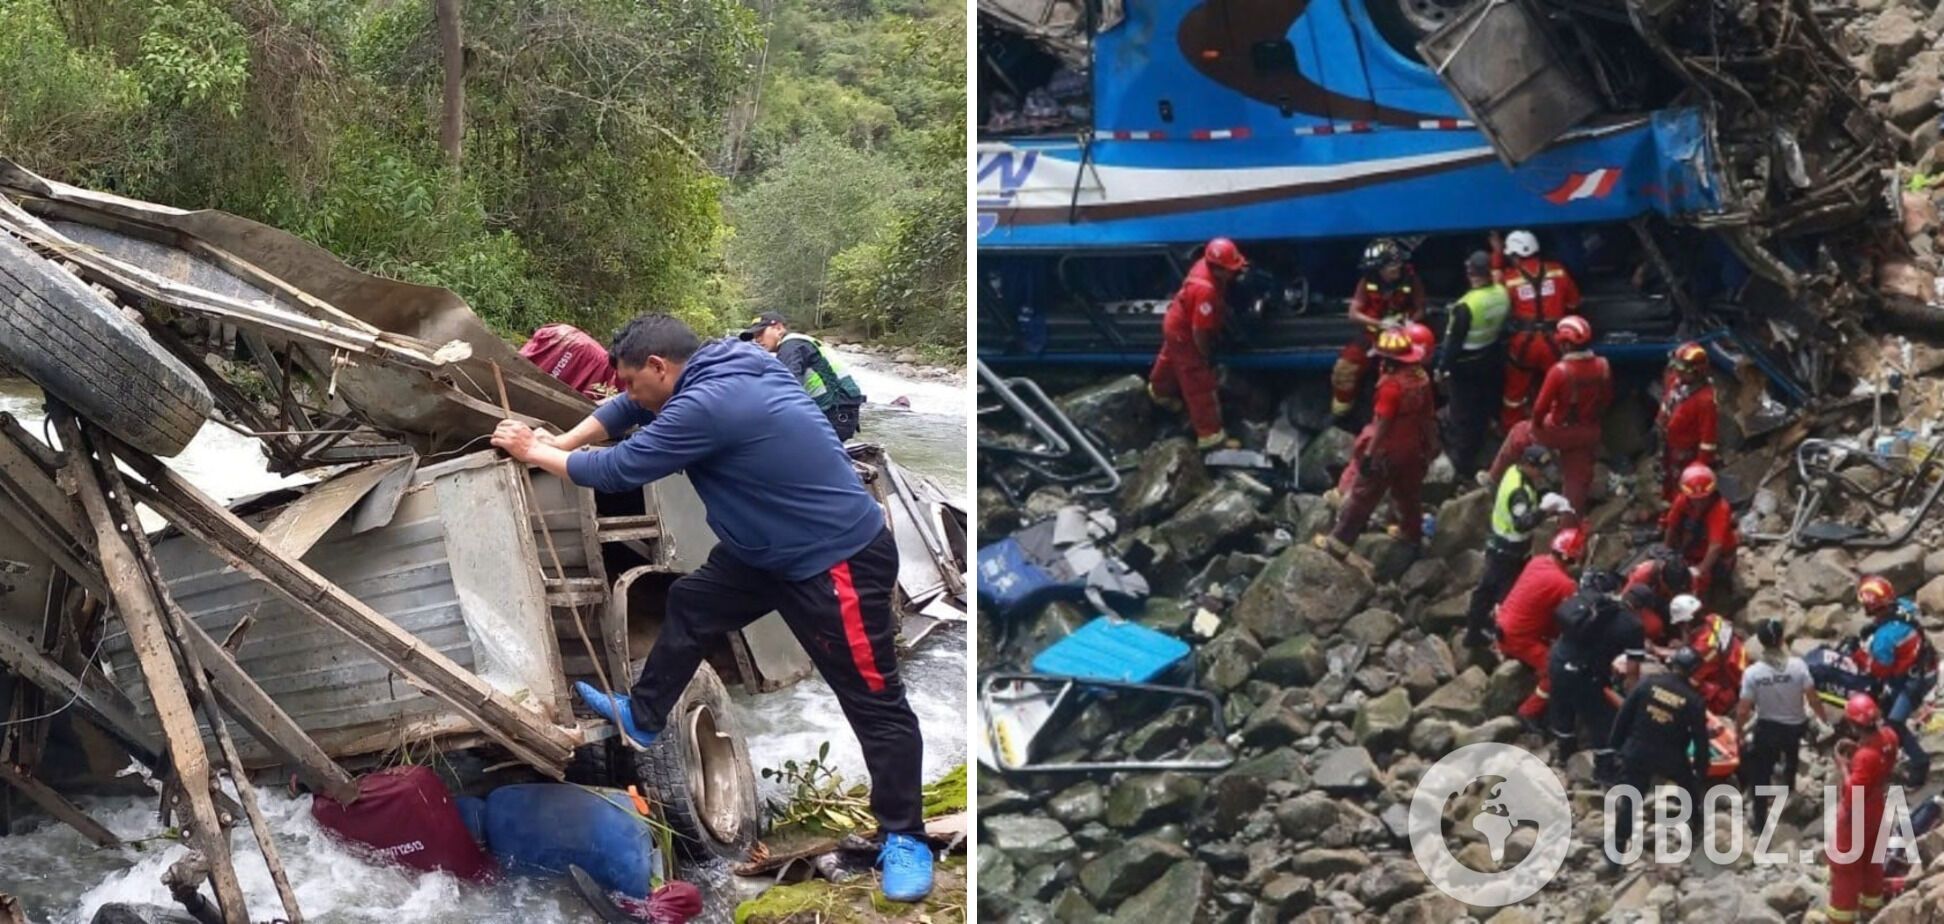 У Перу пасажирський автобус злетів у прірву, загинули десятки людей. Фото